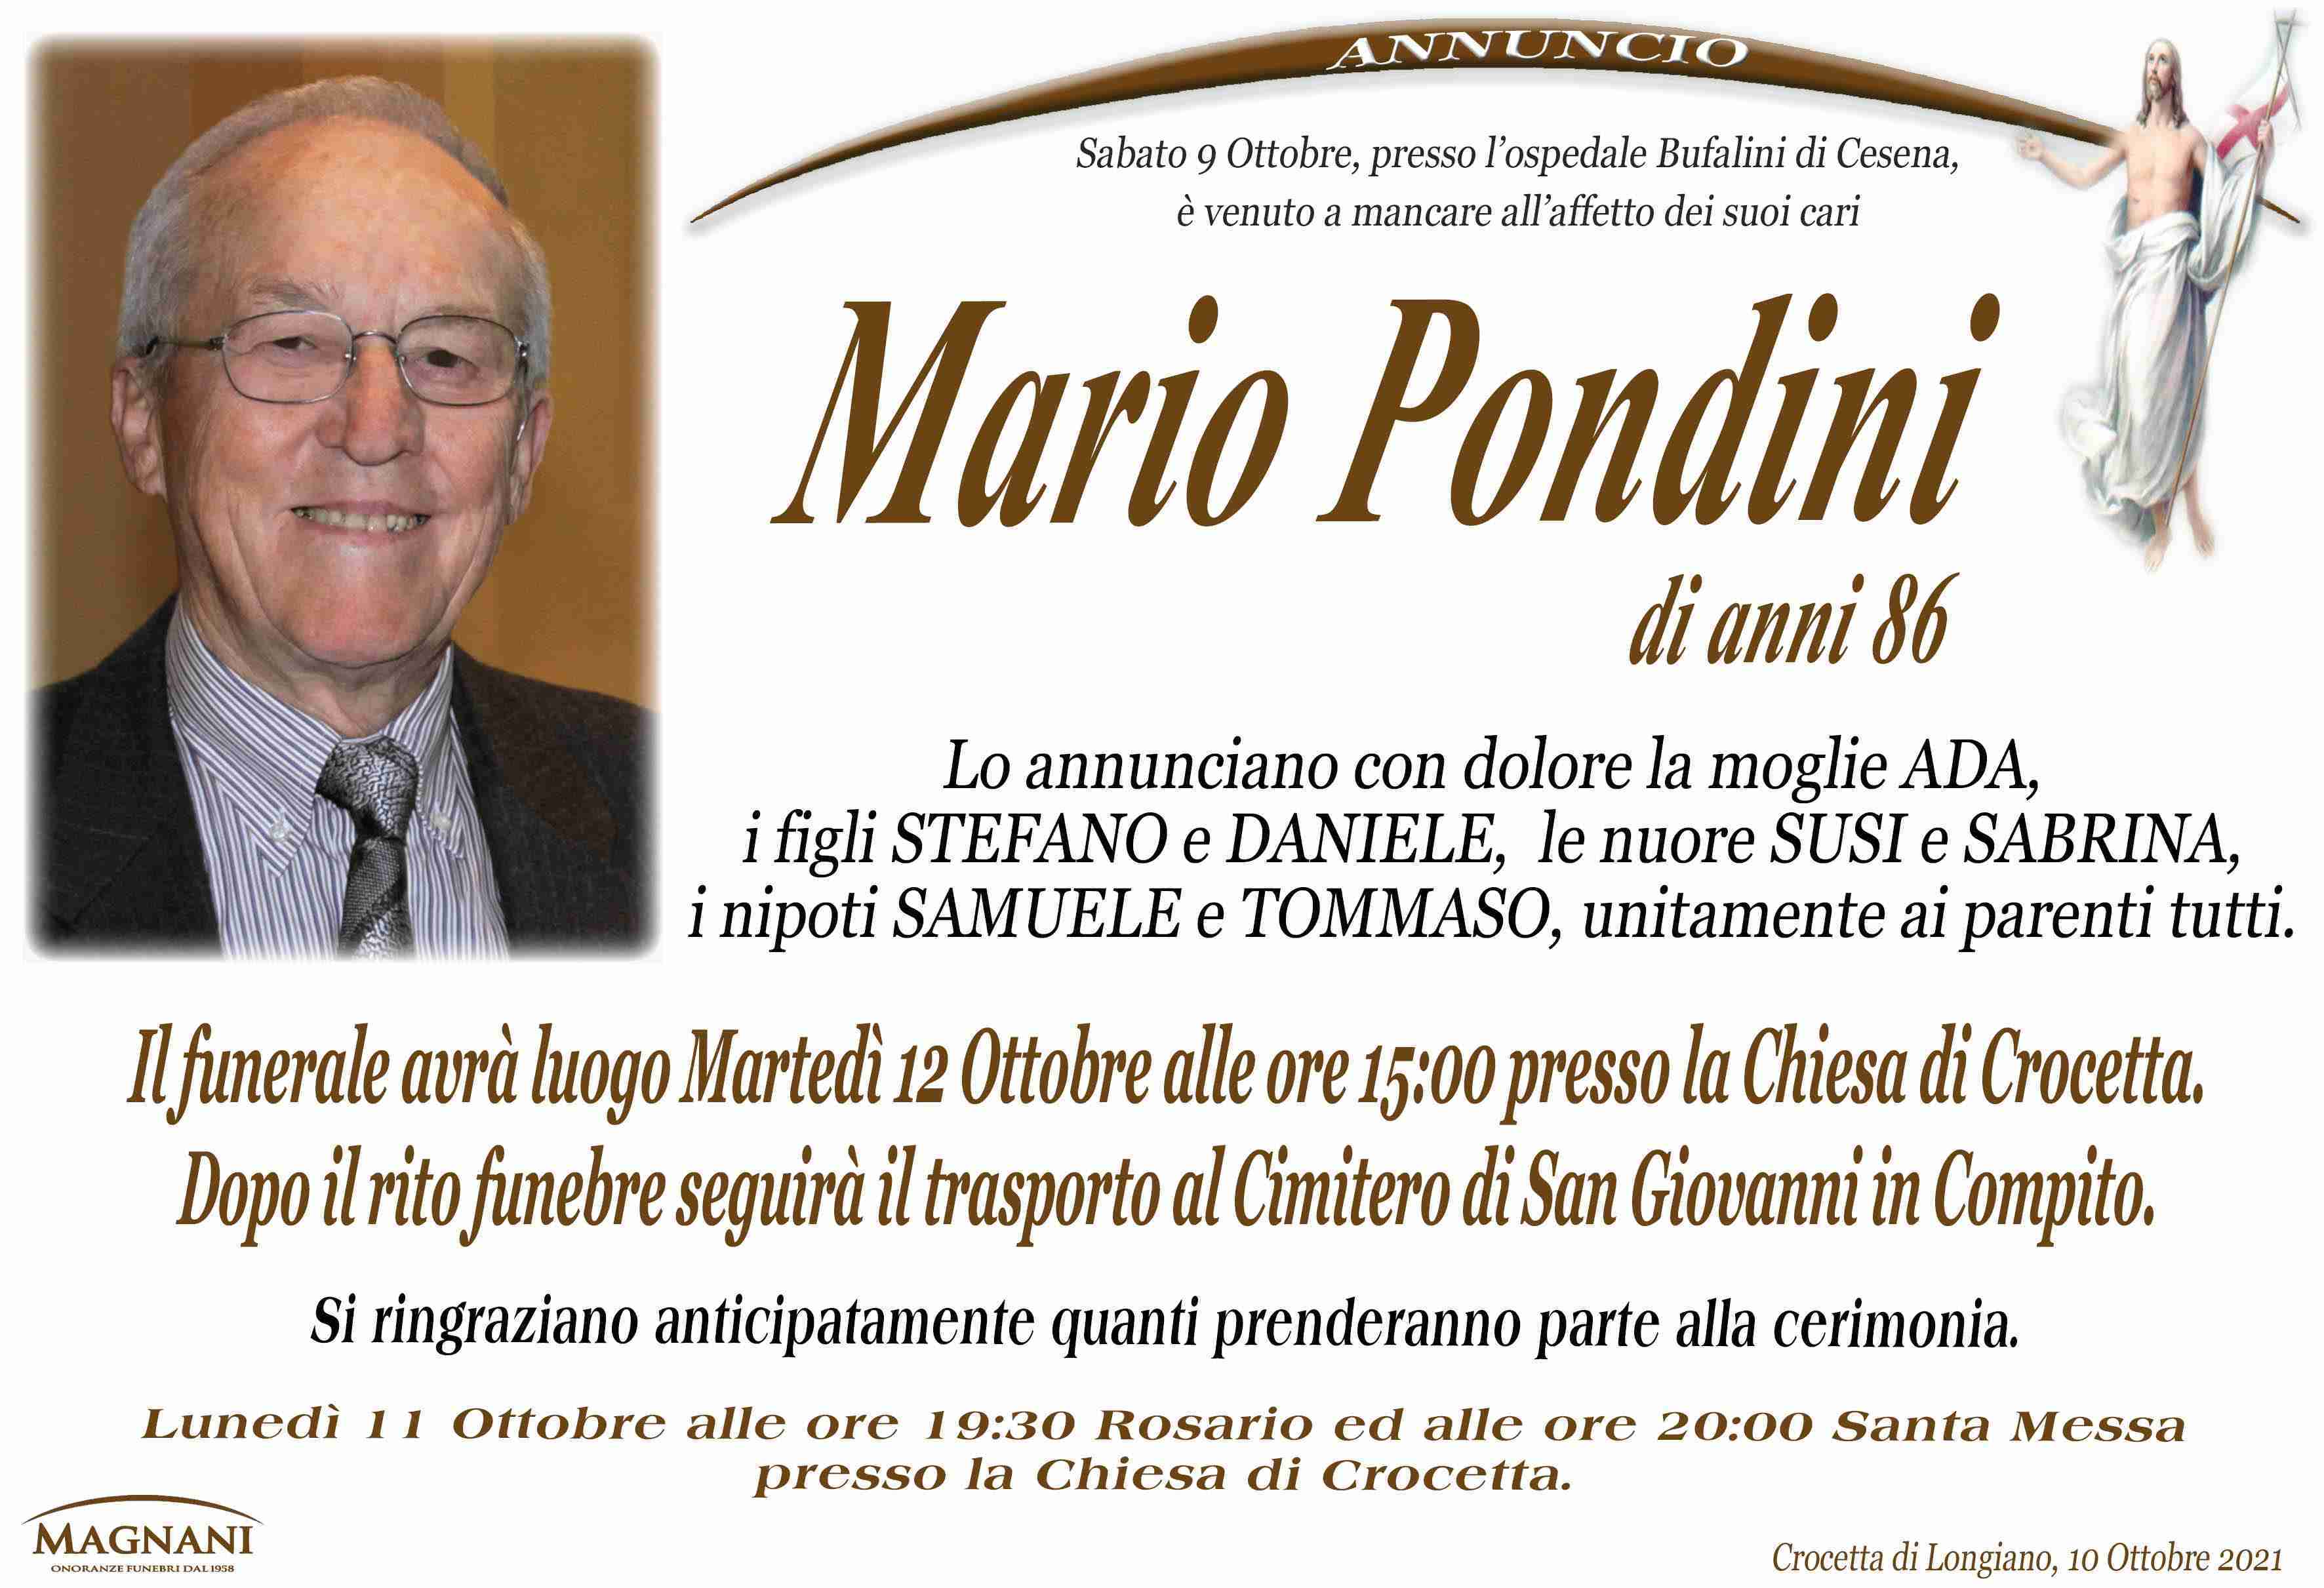 Mario Pondini